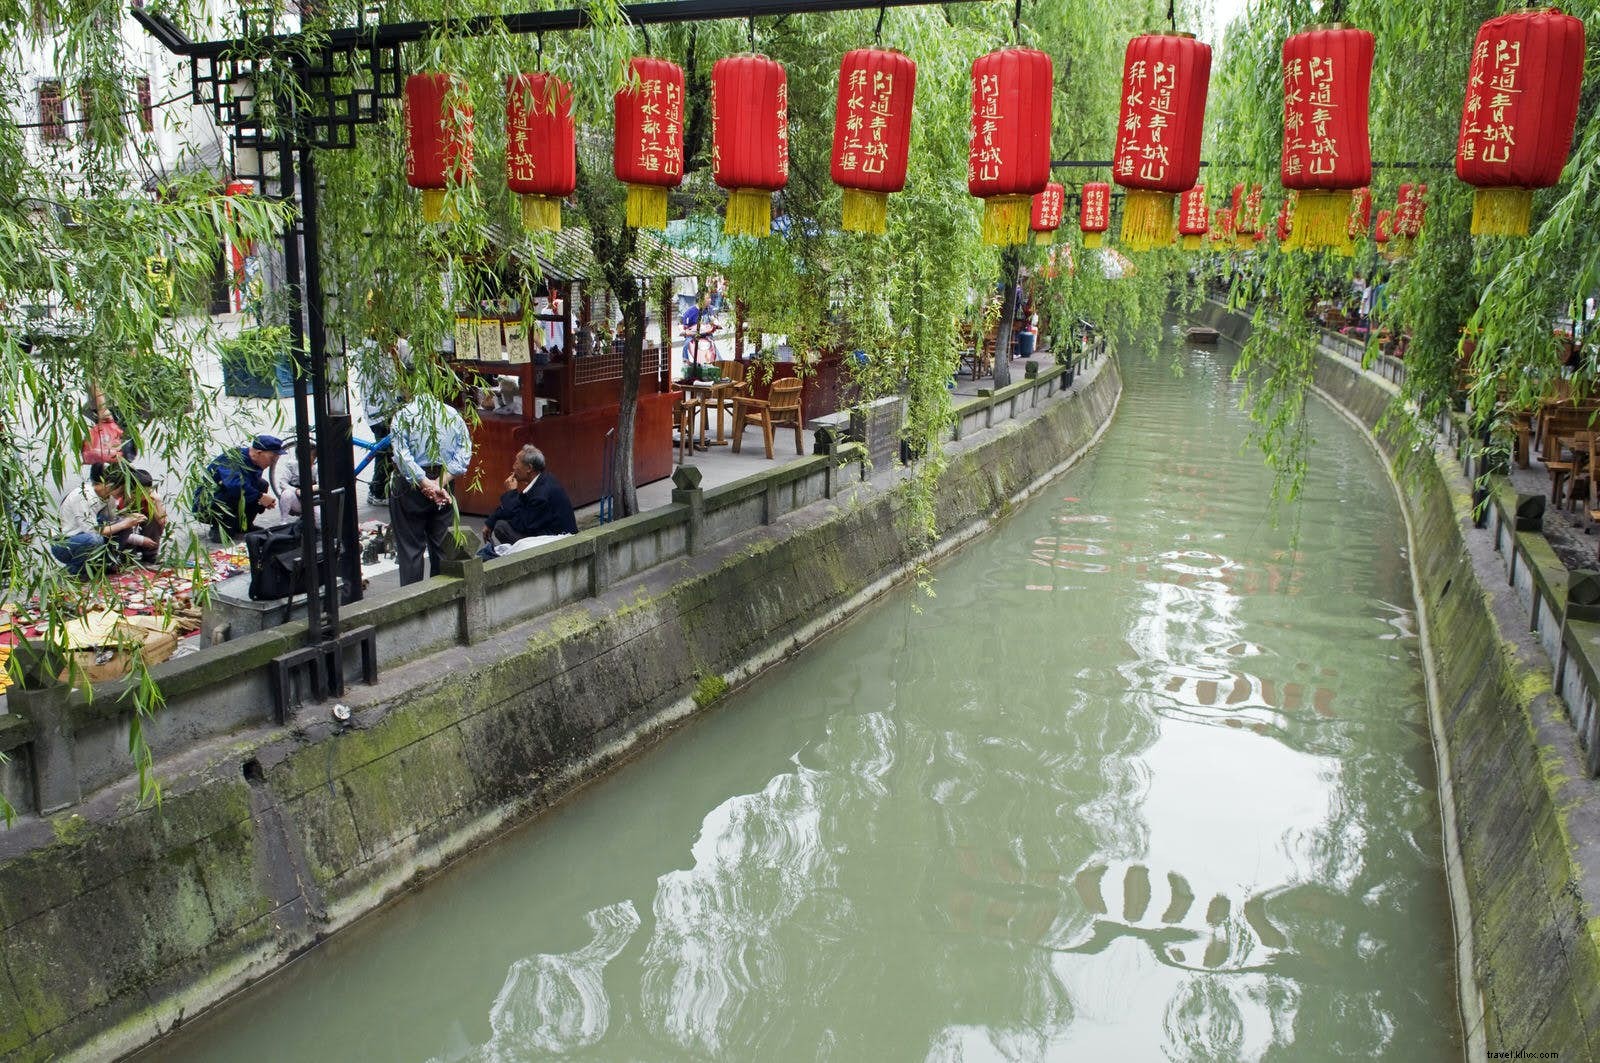 Ralentir dans les vieilles villes les plus charmantes du Sichuan 